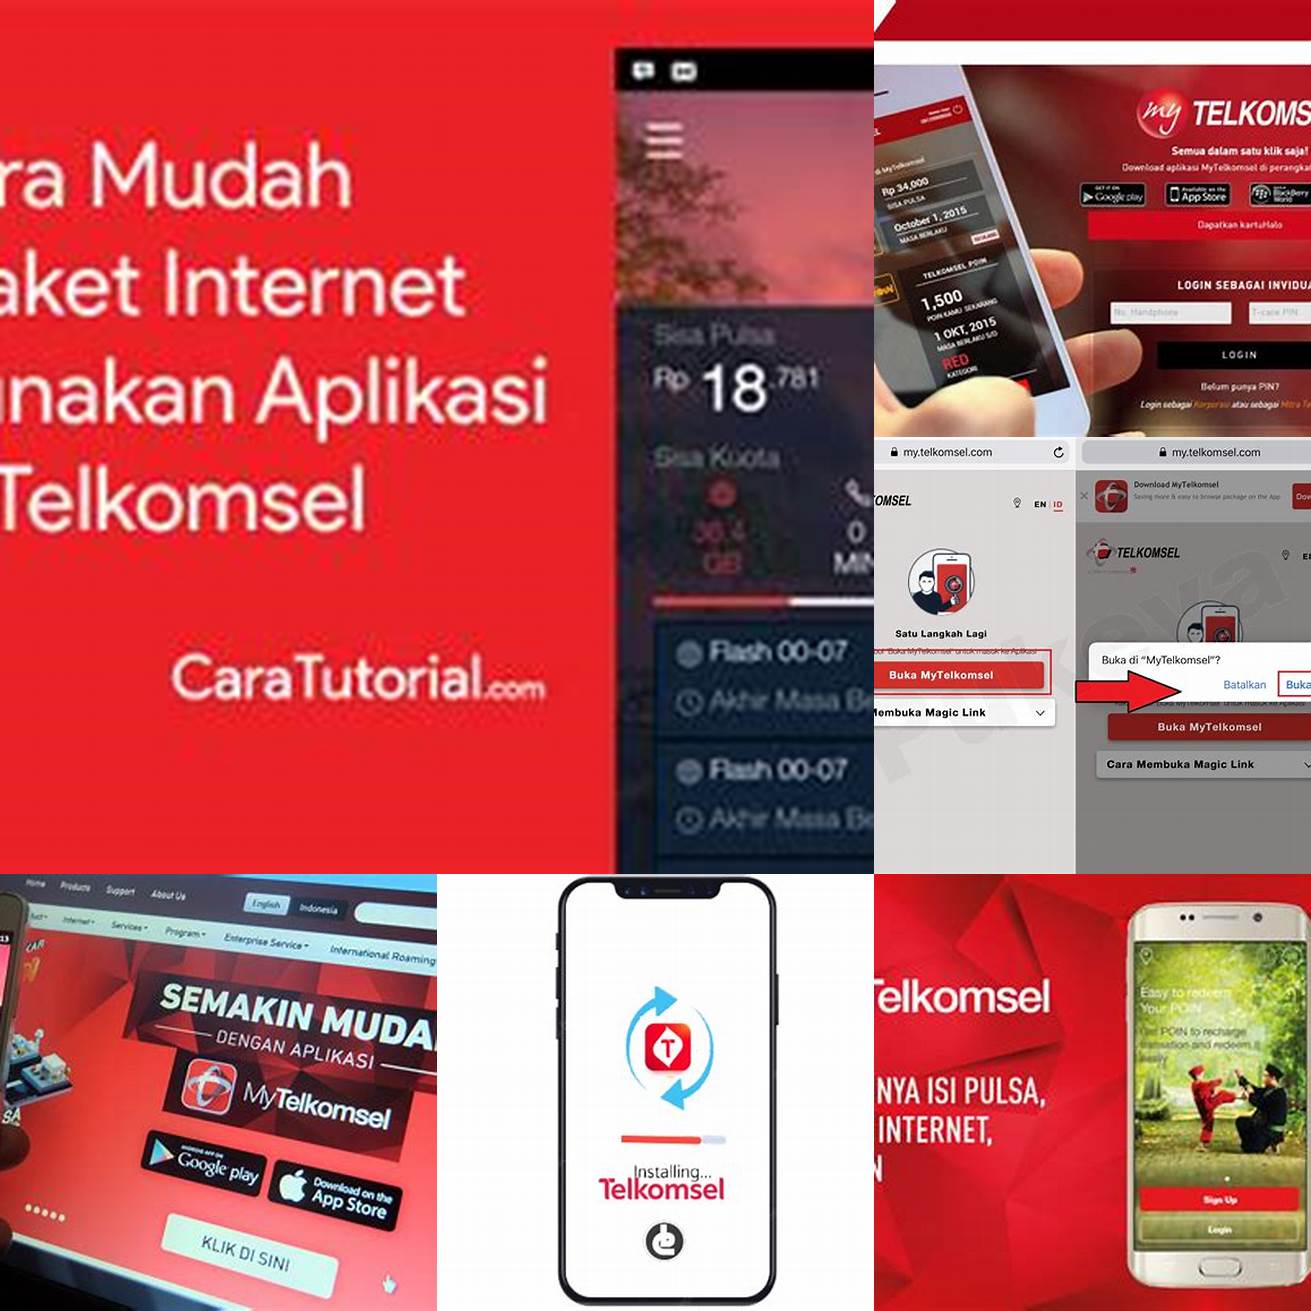 1 Buka aplikasi MyTelkomsel di smartphone Anda